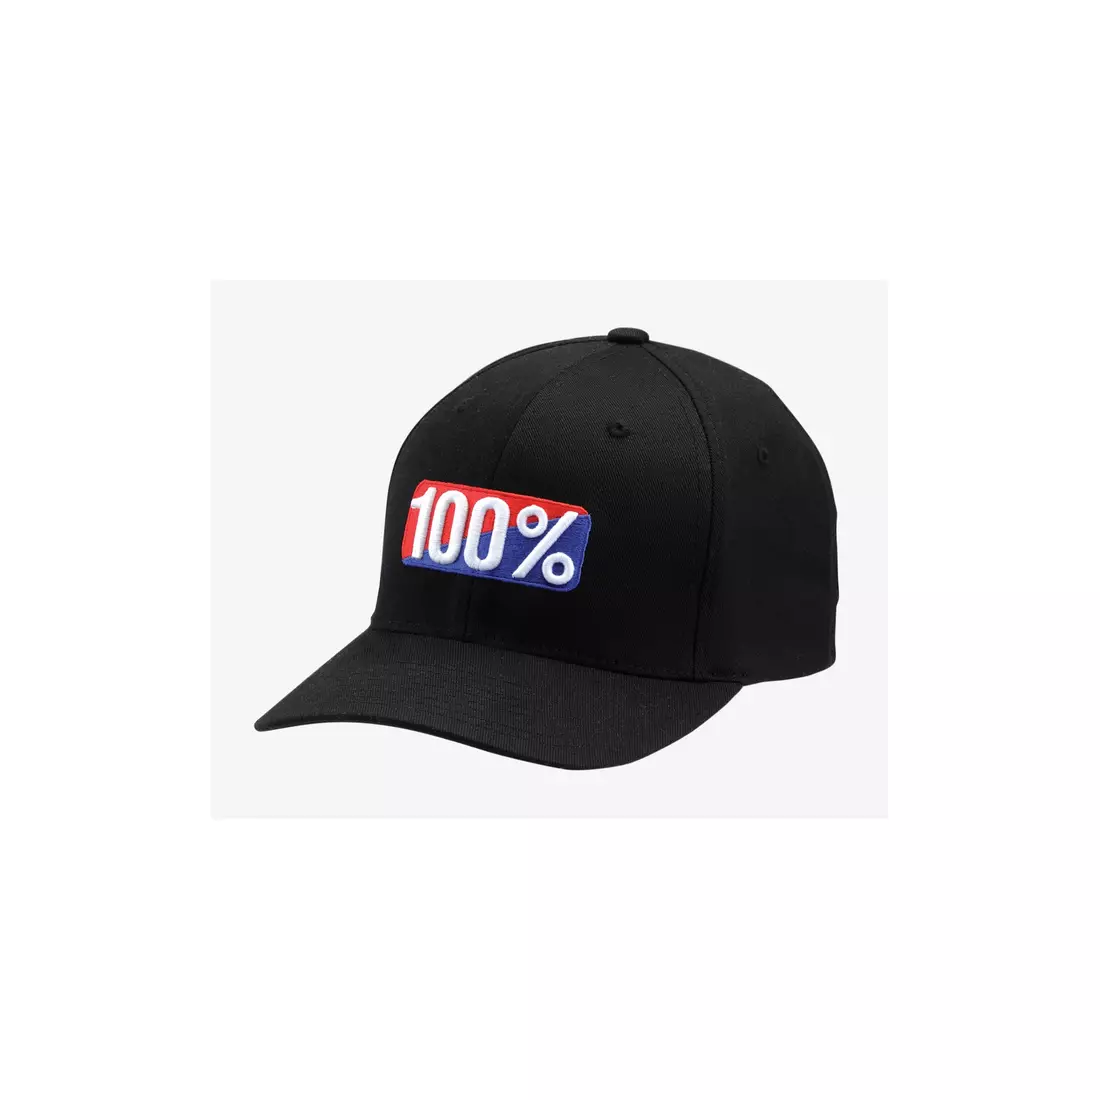 100% czapka z daszkiem CLASSIC X-Fit flexfit hat black STO-20011-001-18